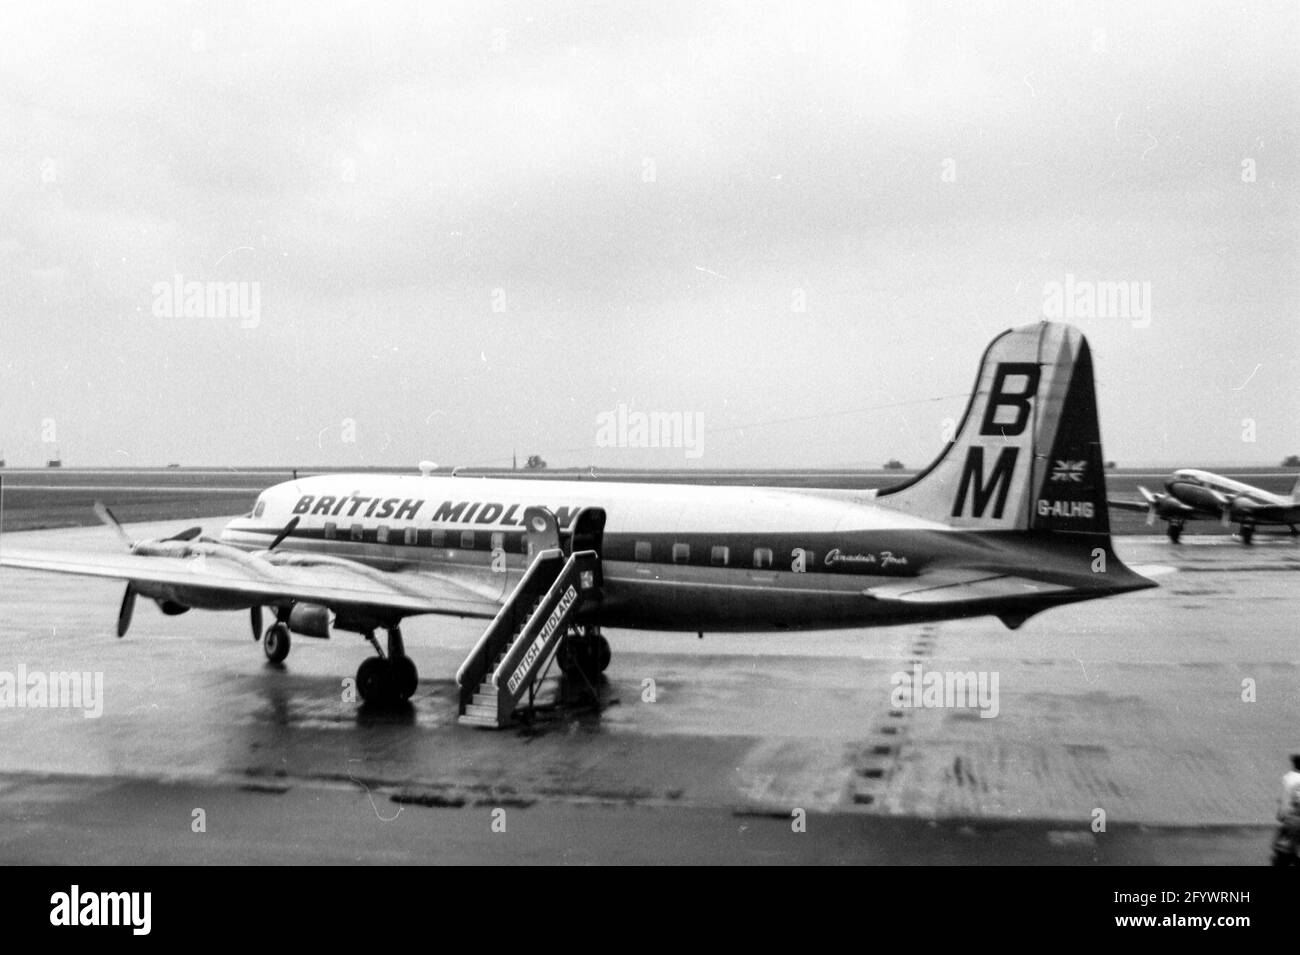 Un aeromobile delle Midland britanniche presso l'aeroporto delle East Midlands nel 1966 Foto Stock